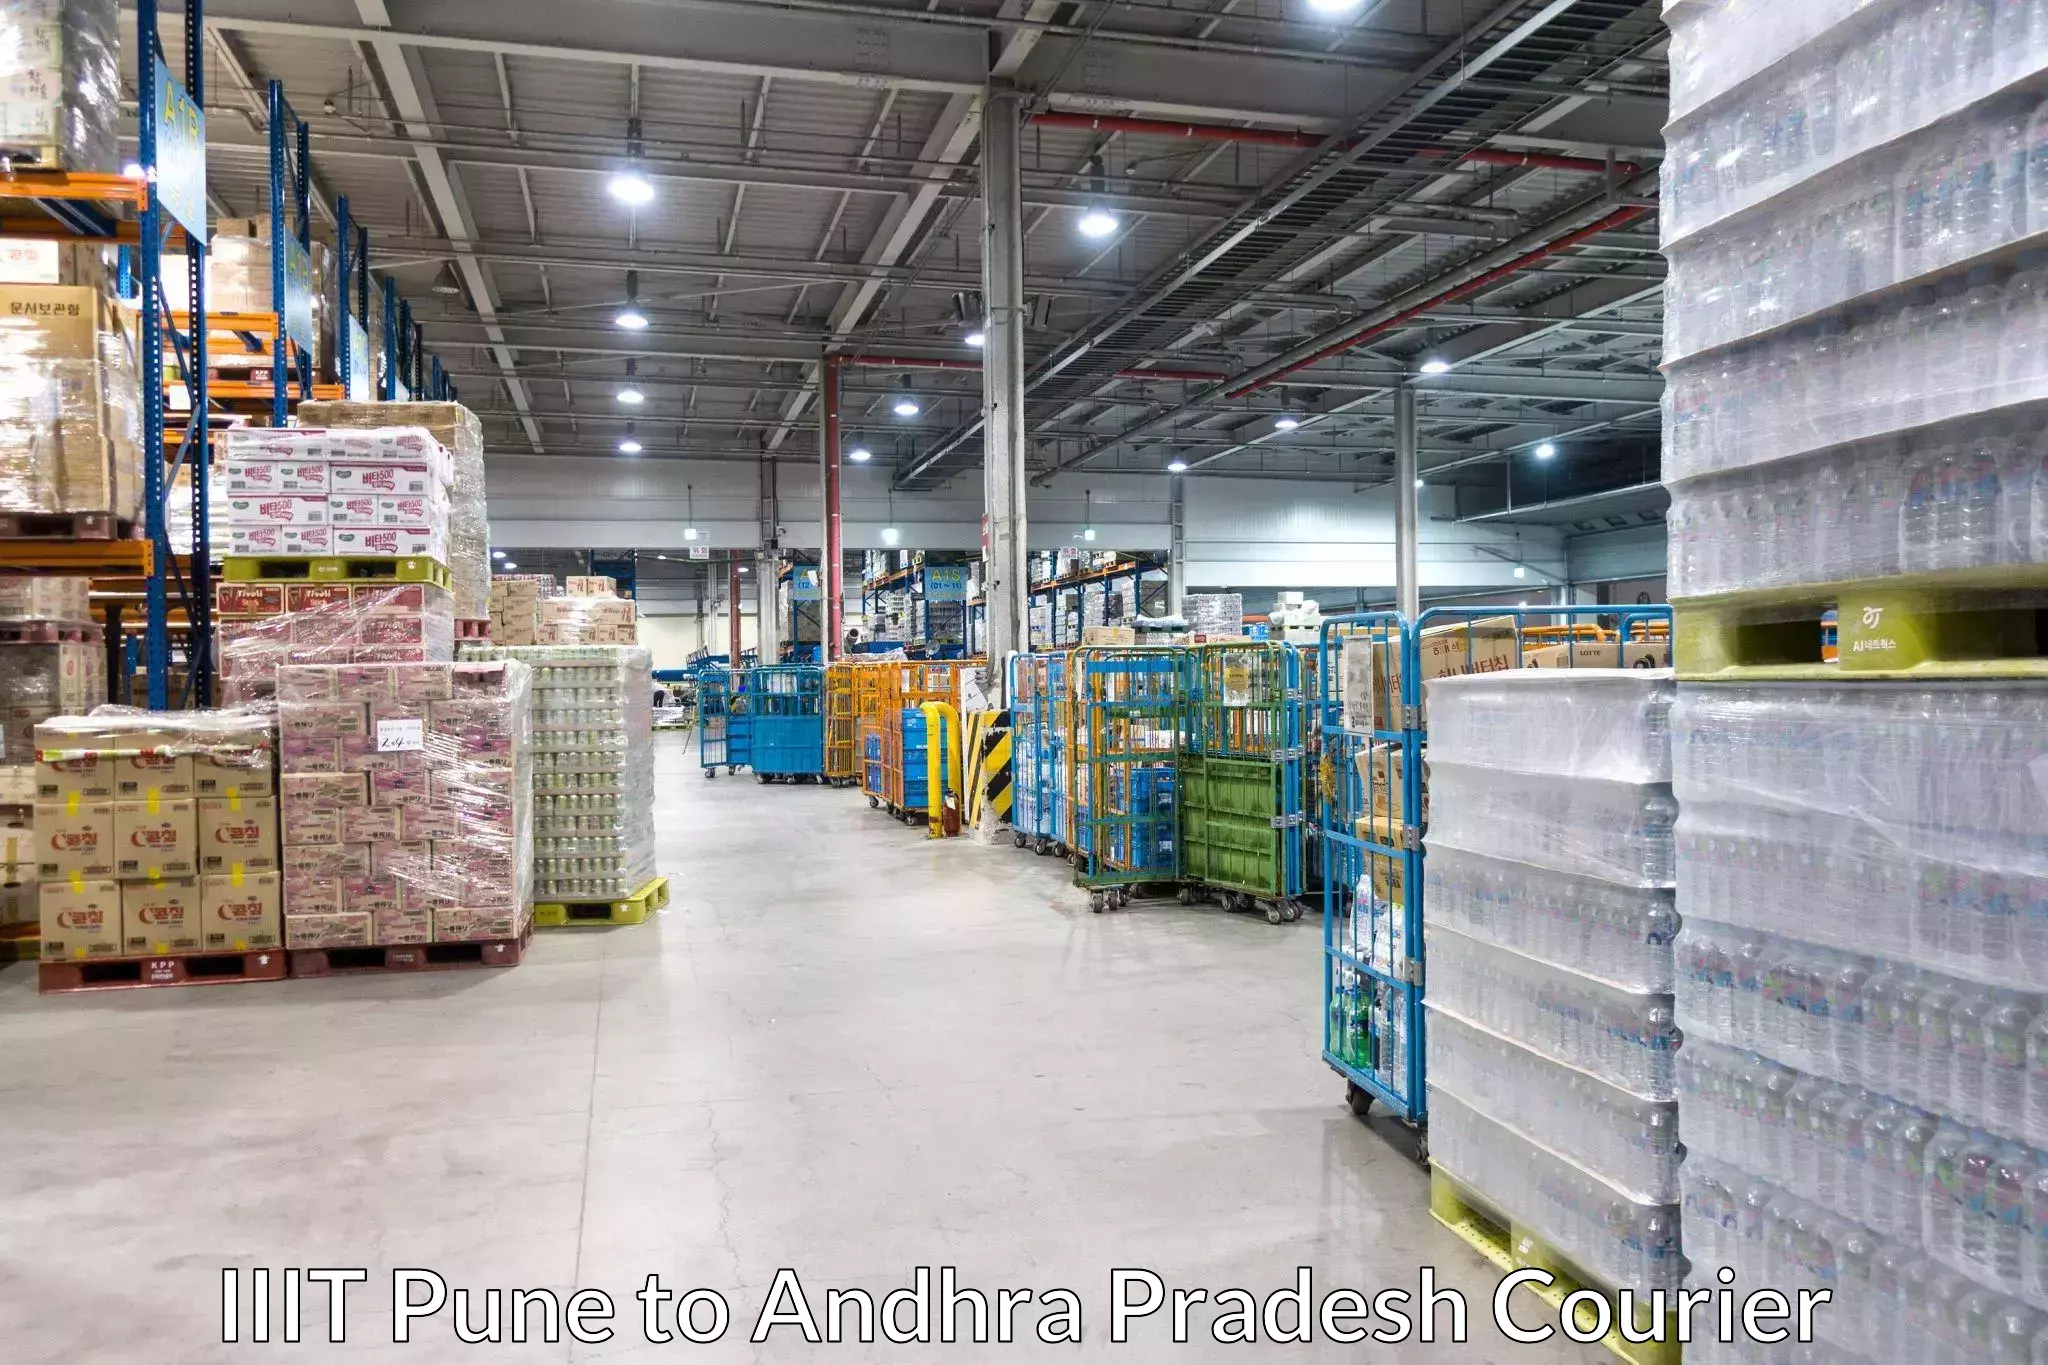 Cost-effective courier solutions IIIT Pune to Konduru